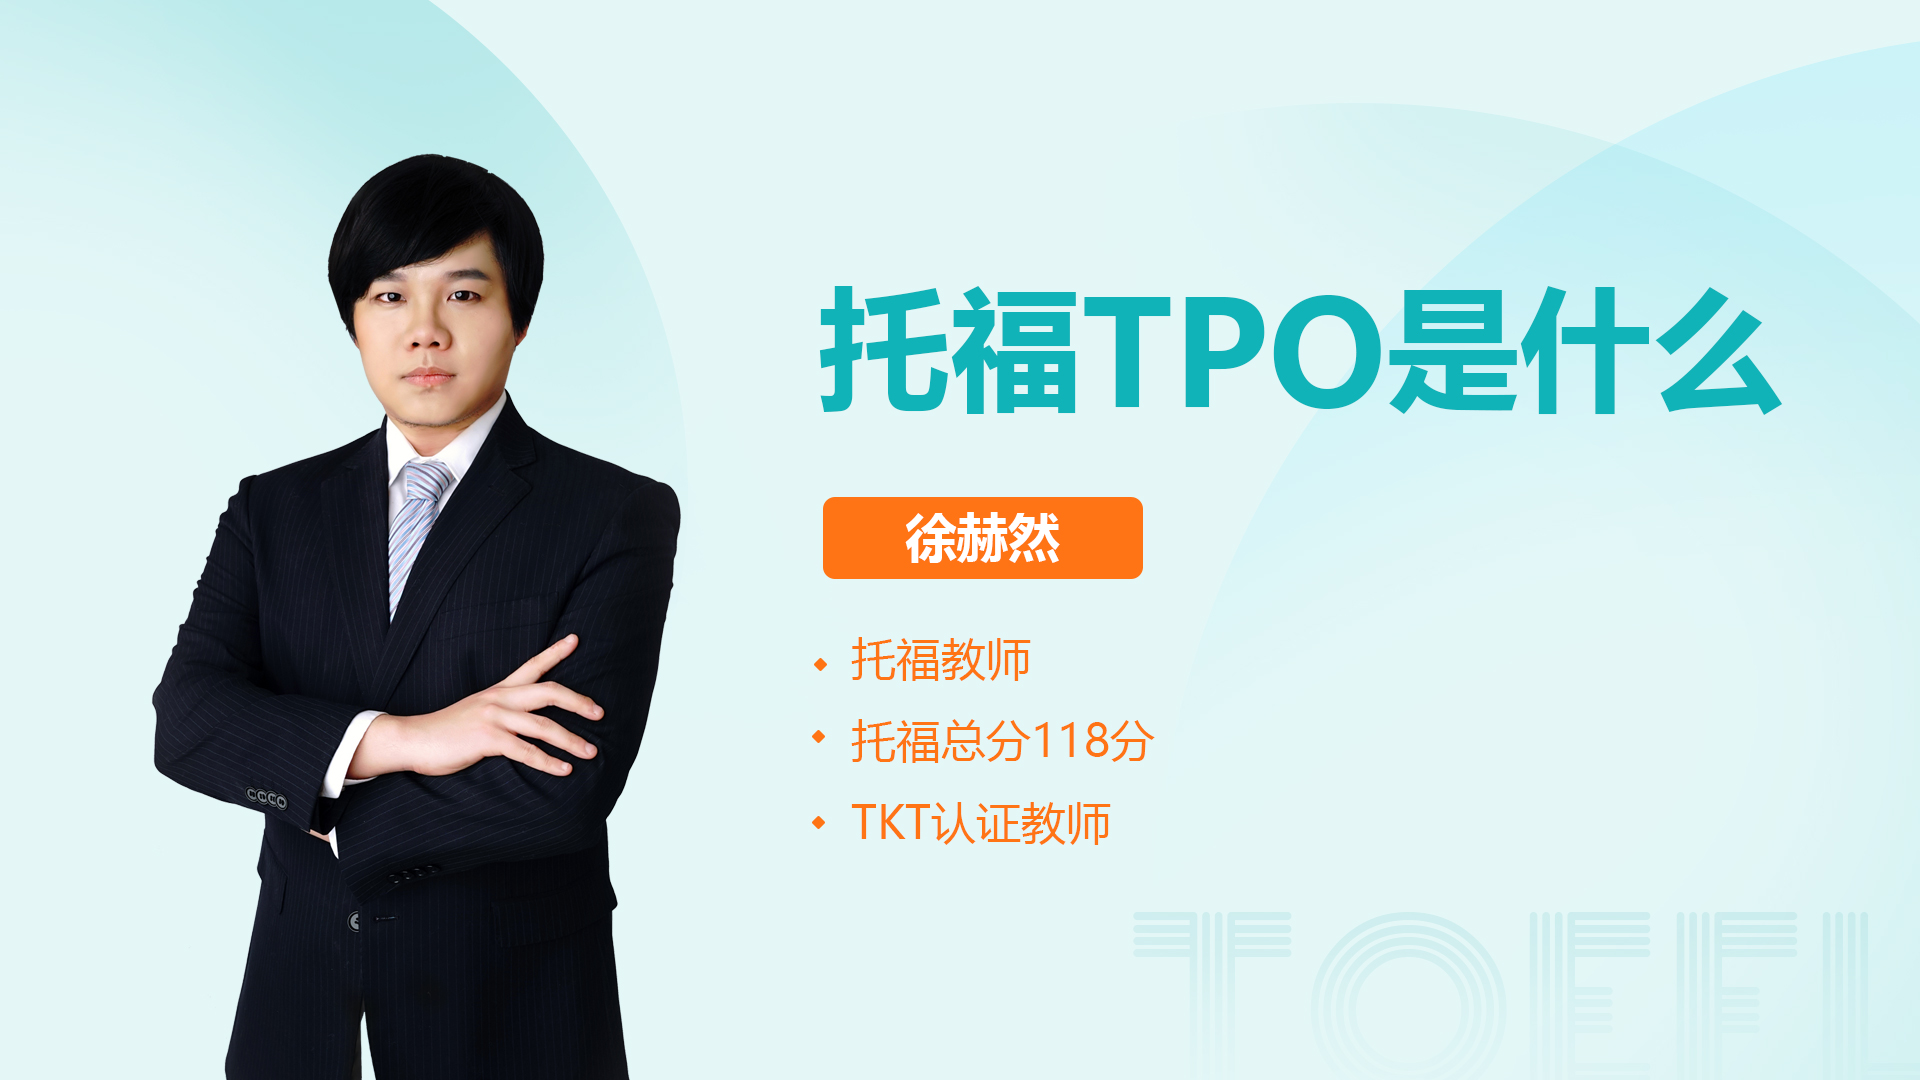 托福tpo是什么